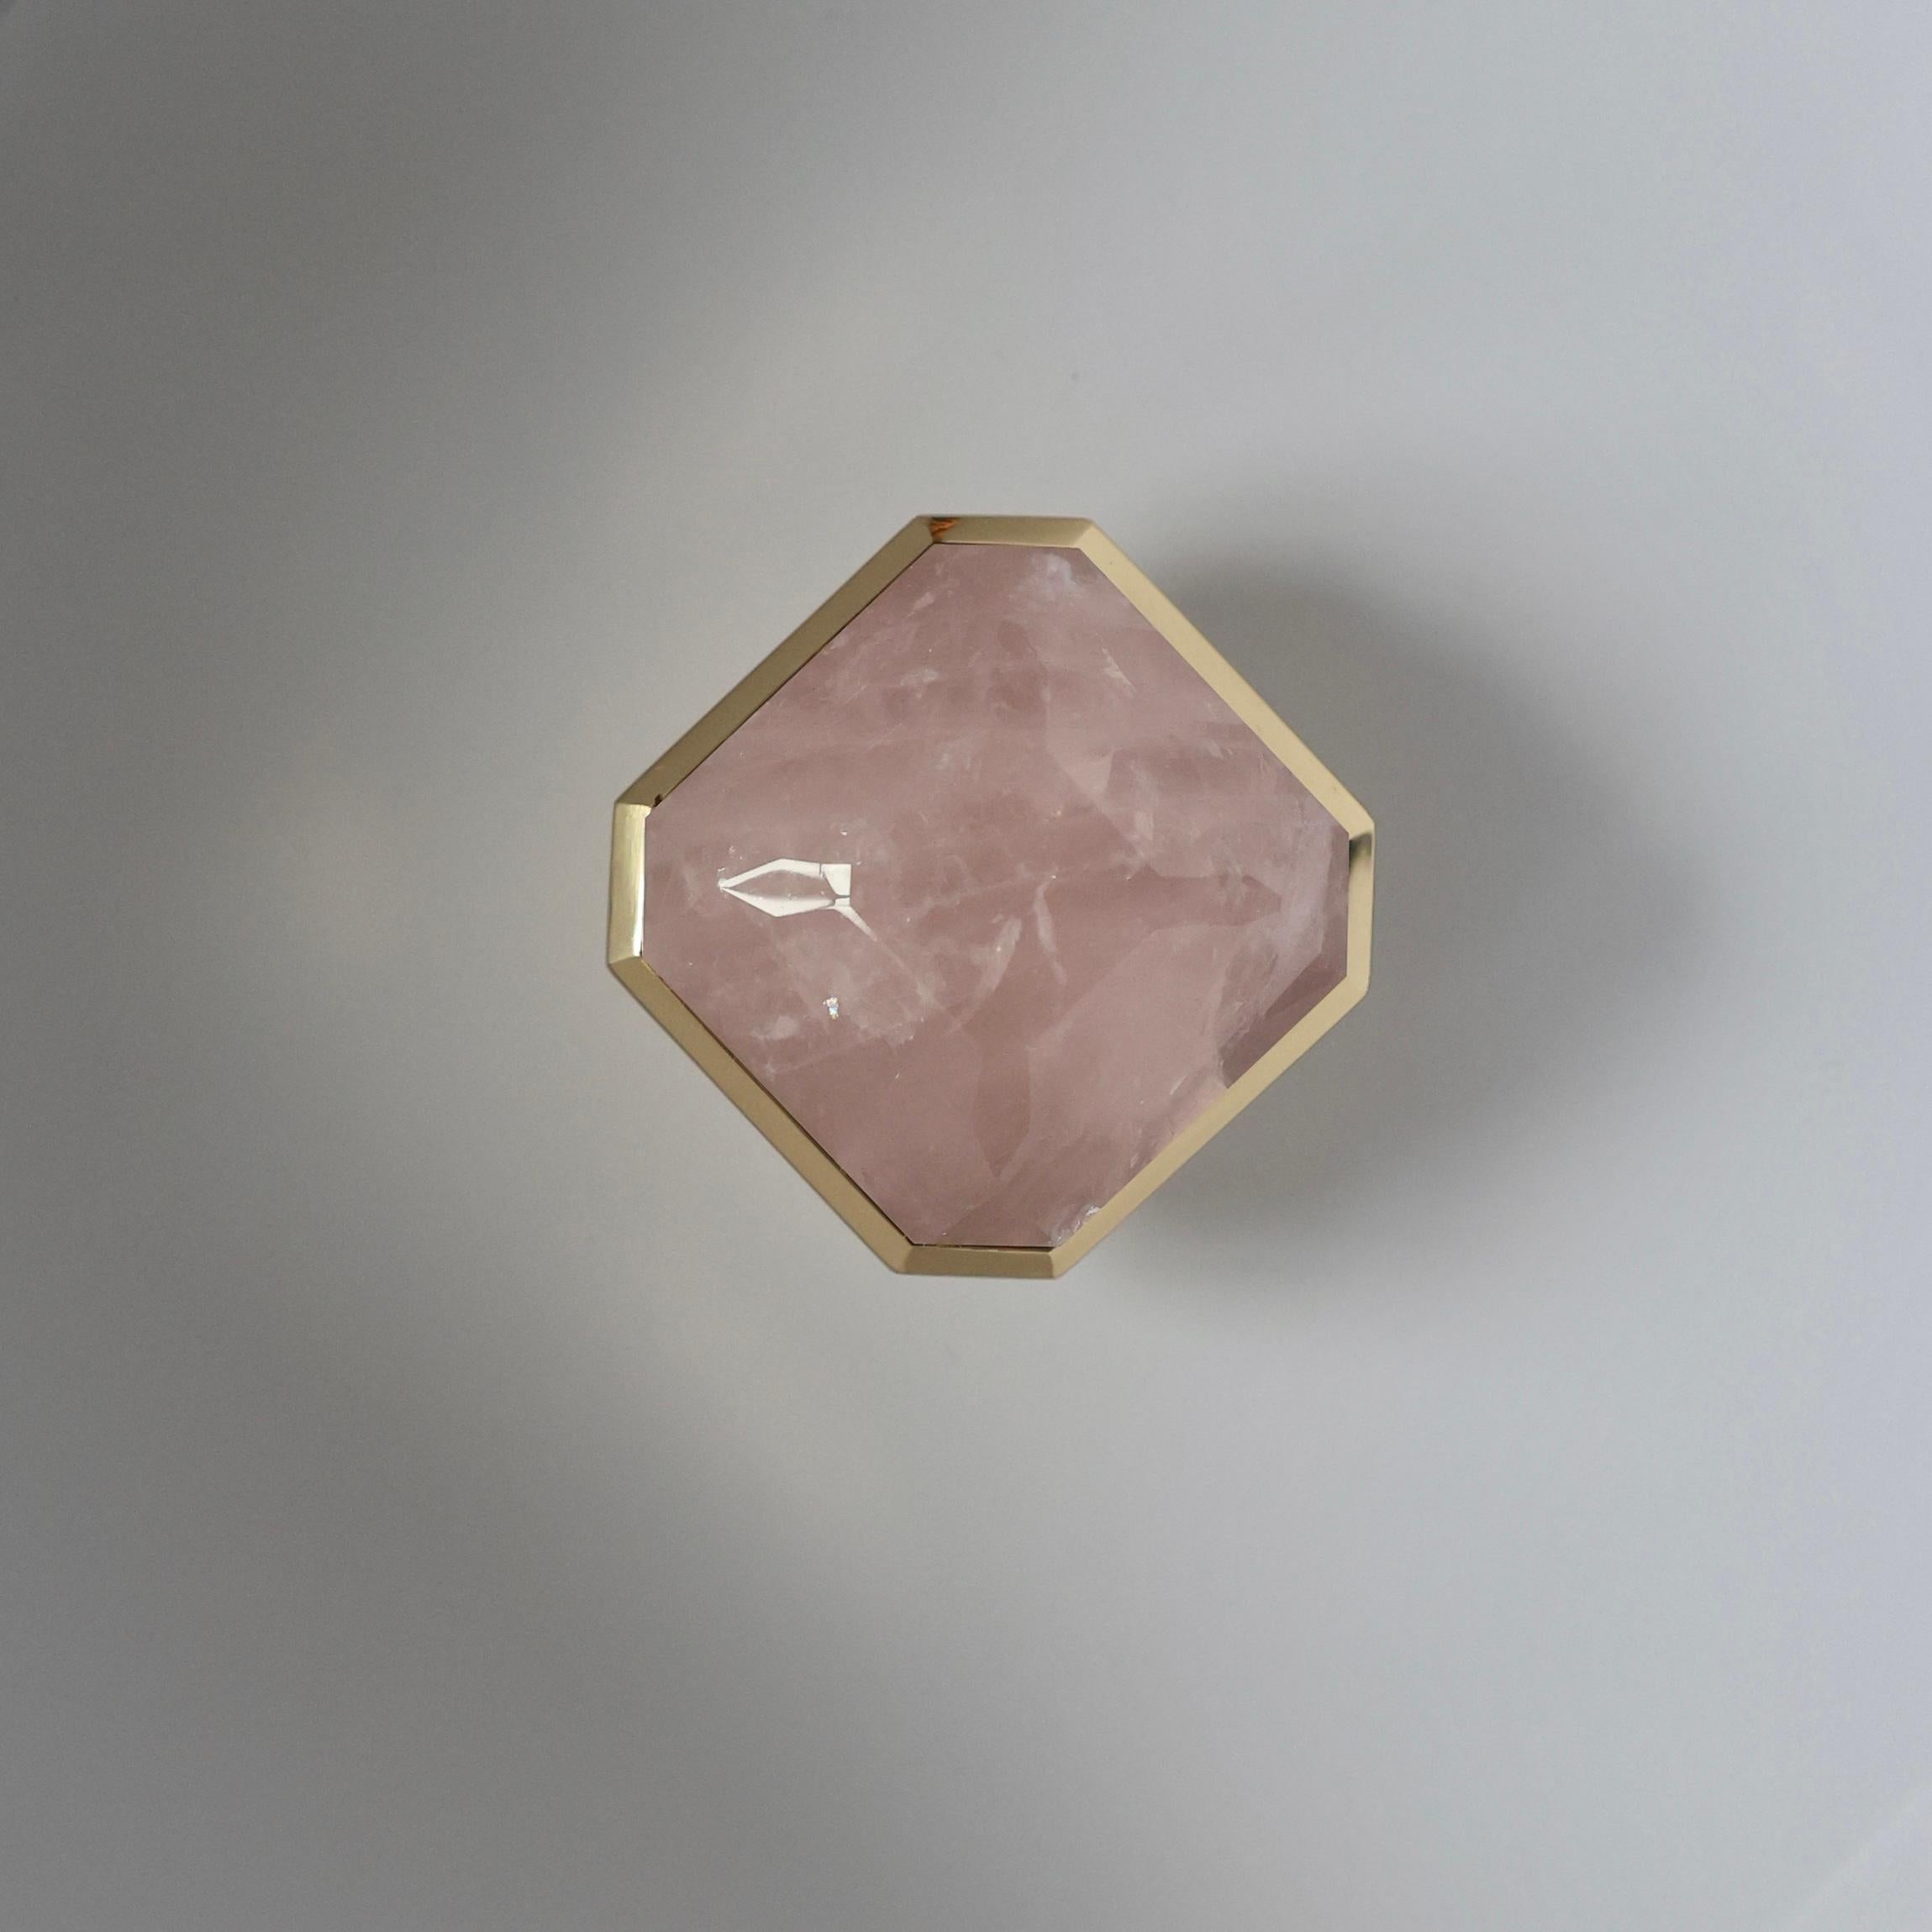 Boutons en cristal de roche rose taillé en diamant avec décoration en laiton poli, créés par Phoenix 

Finition métallique et dimensions personnalisées sur demande.
